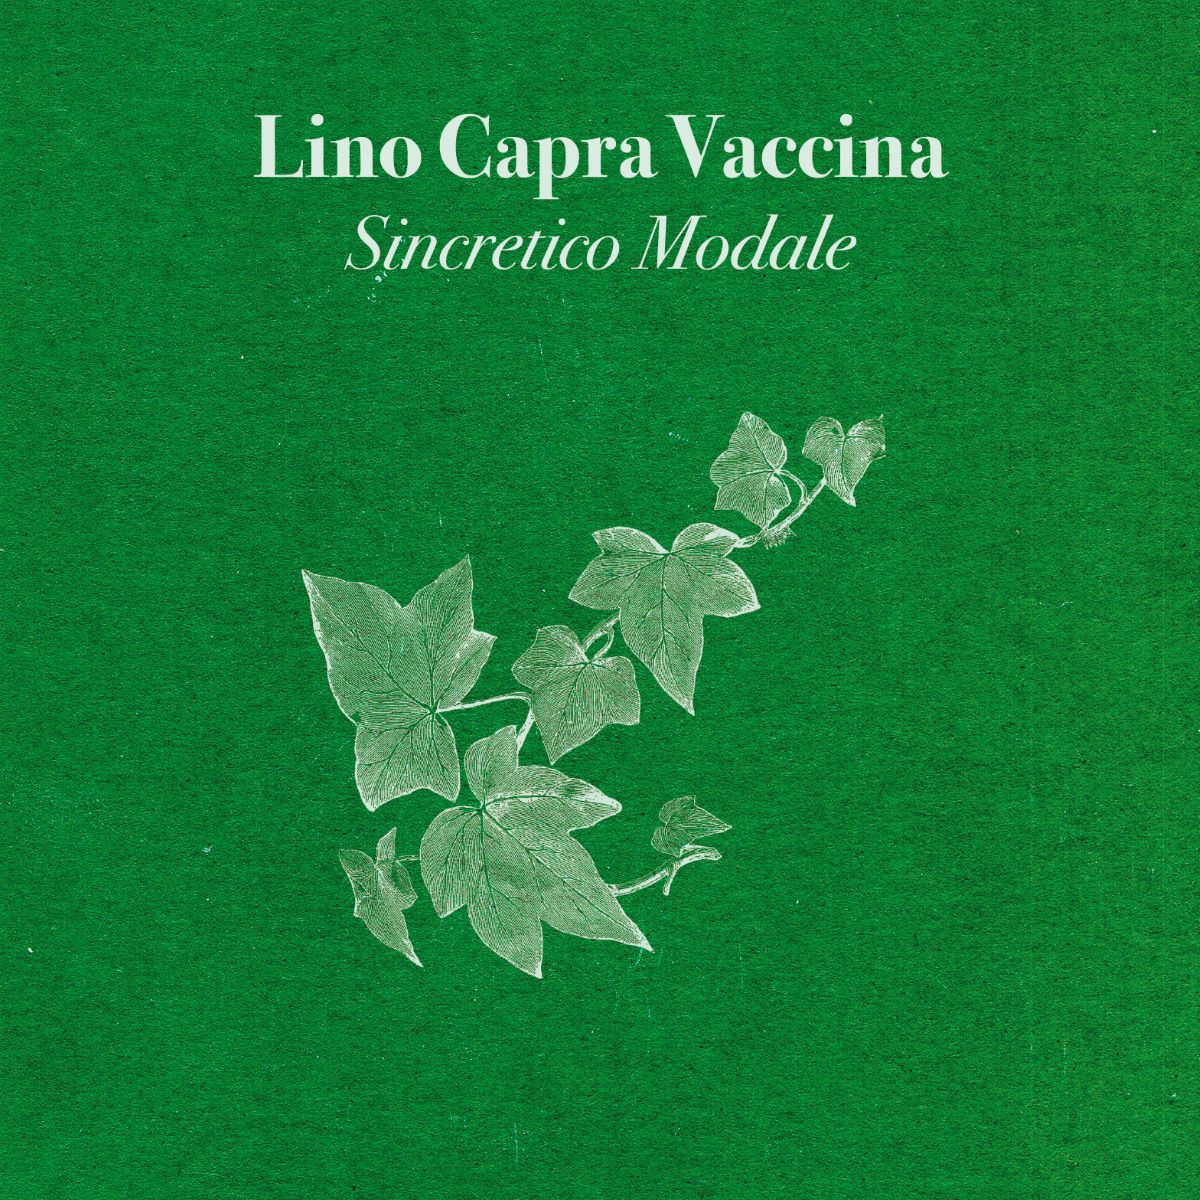 Lino Capra Vaccina - Sincretico Modale CD Gold